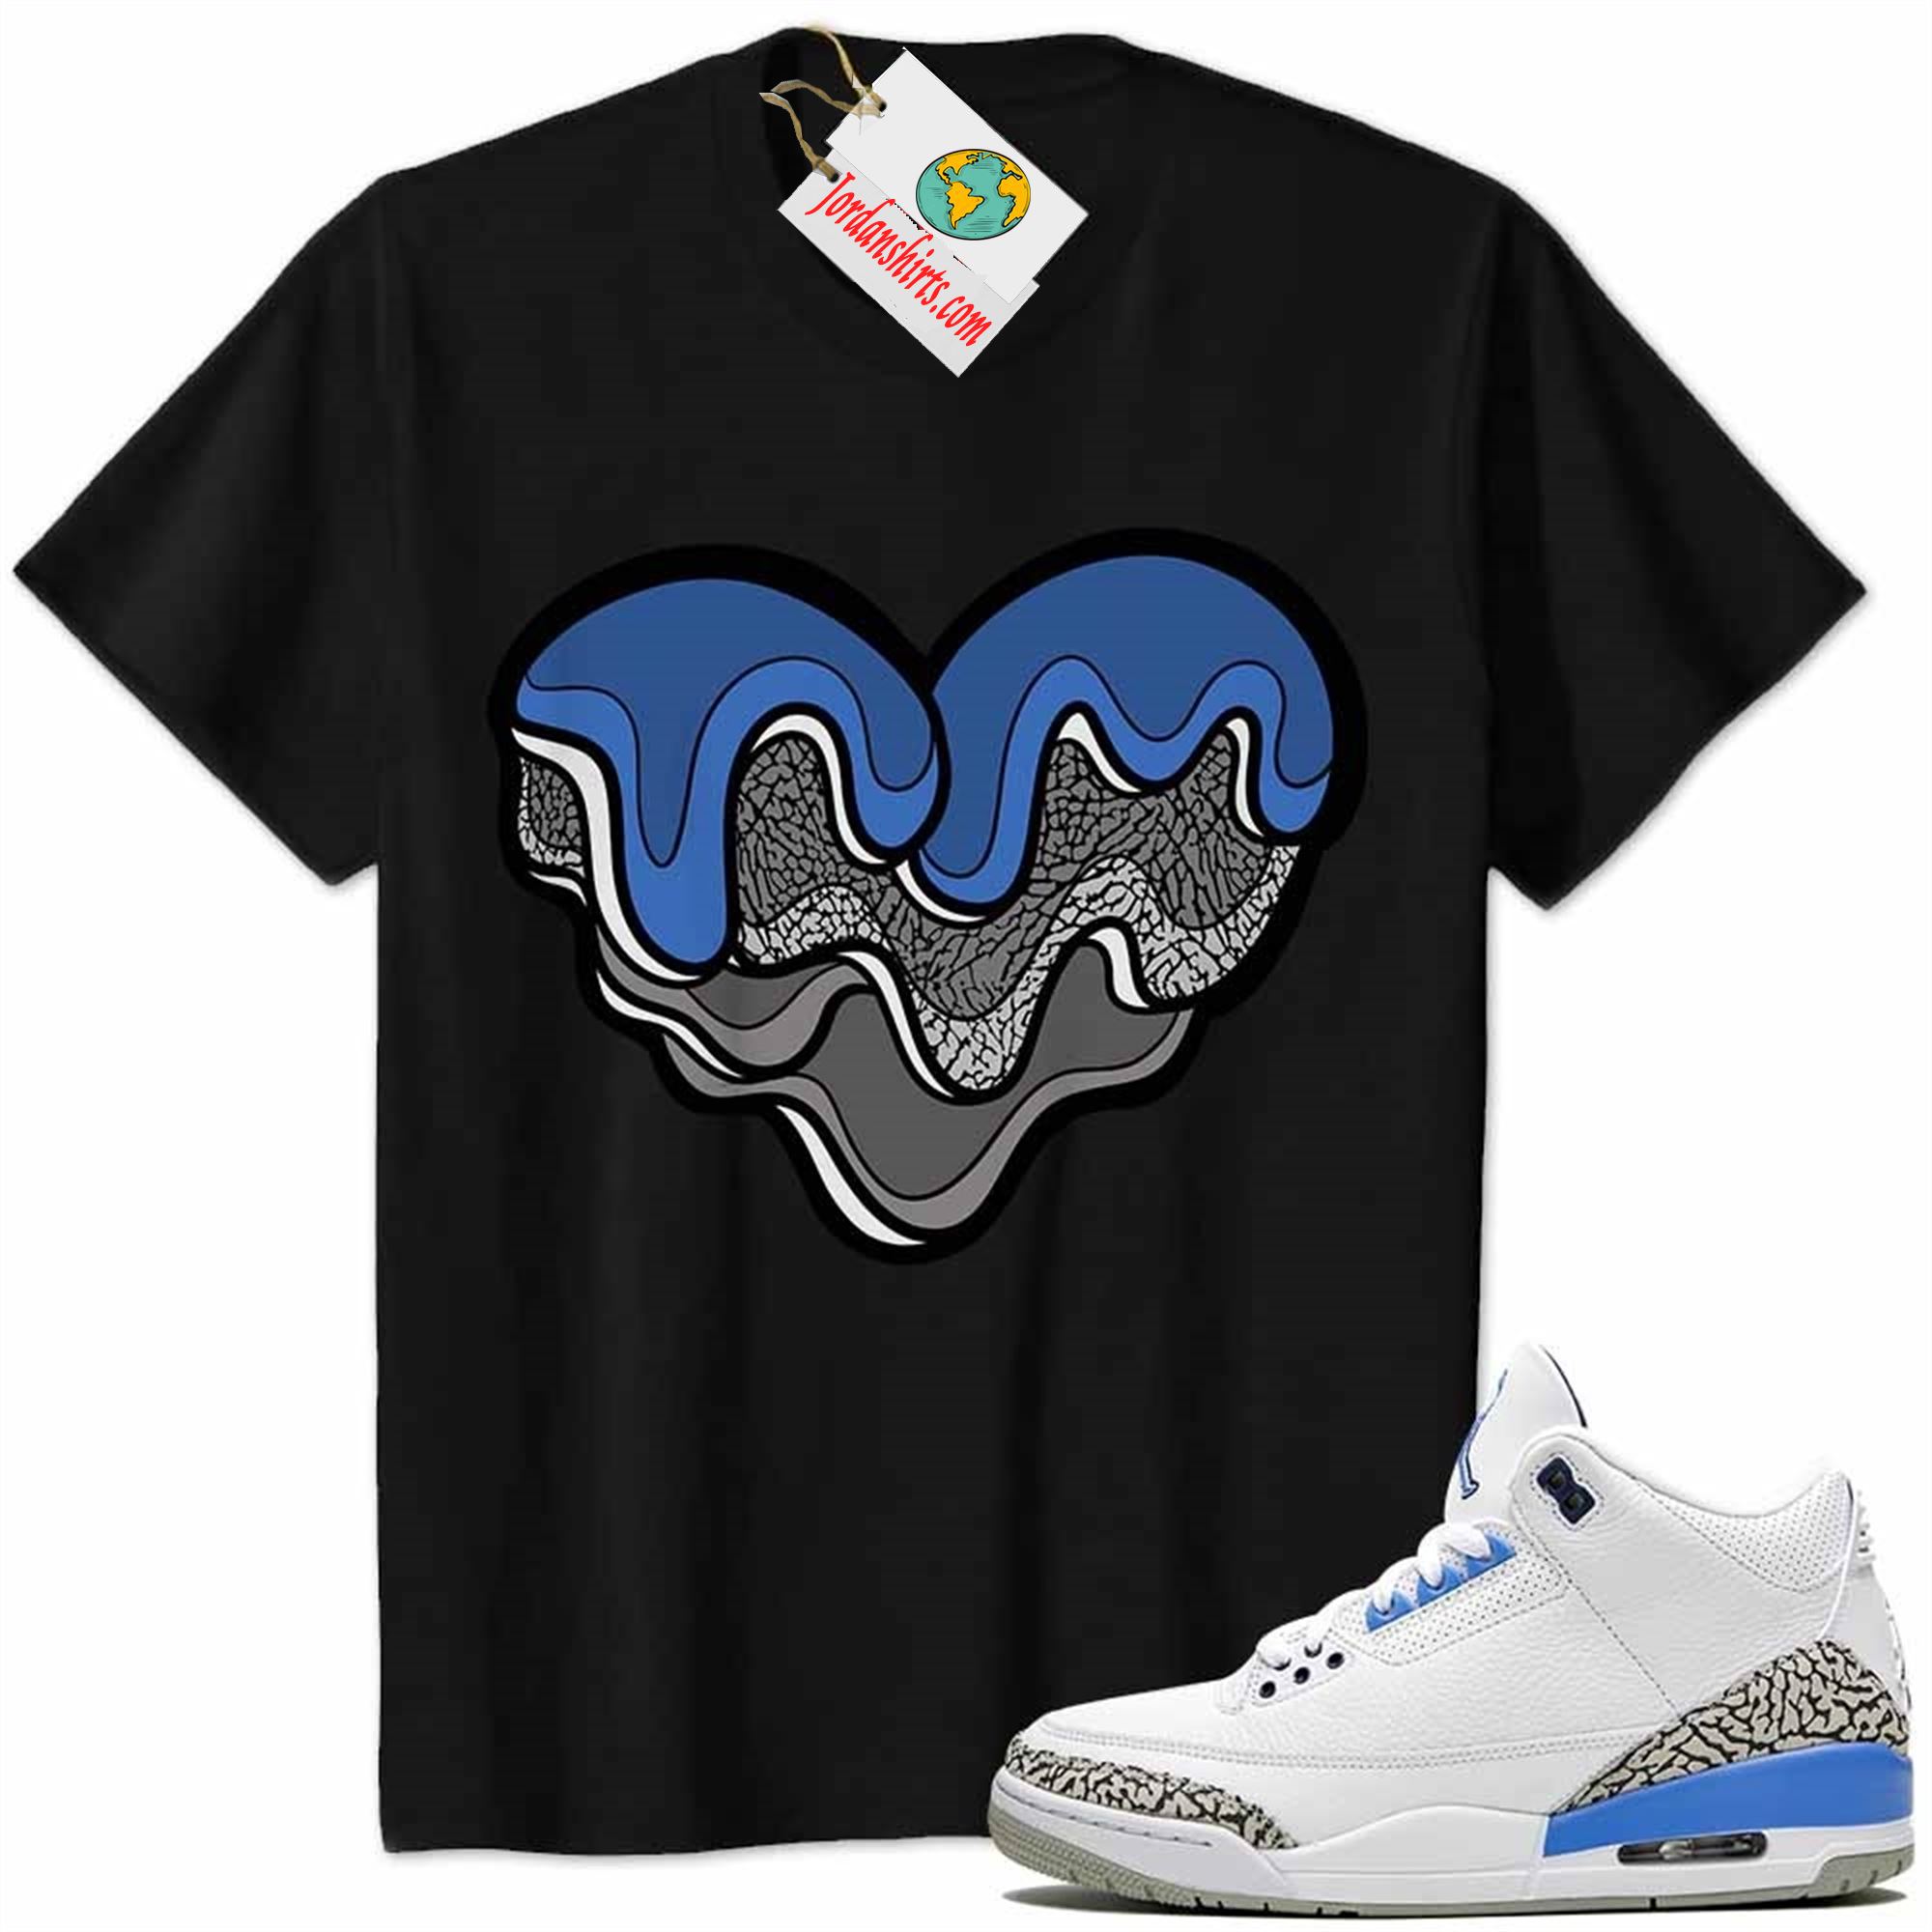 Jordan 3 Shirt, Melt Dripping Heart Black Air Jordan 3 Unc 3s Size Up To 5xl